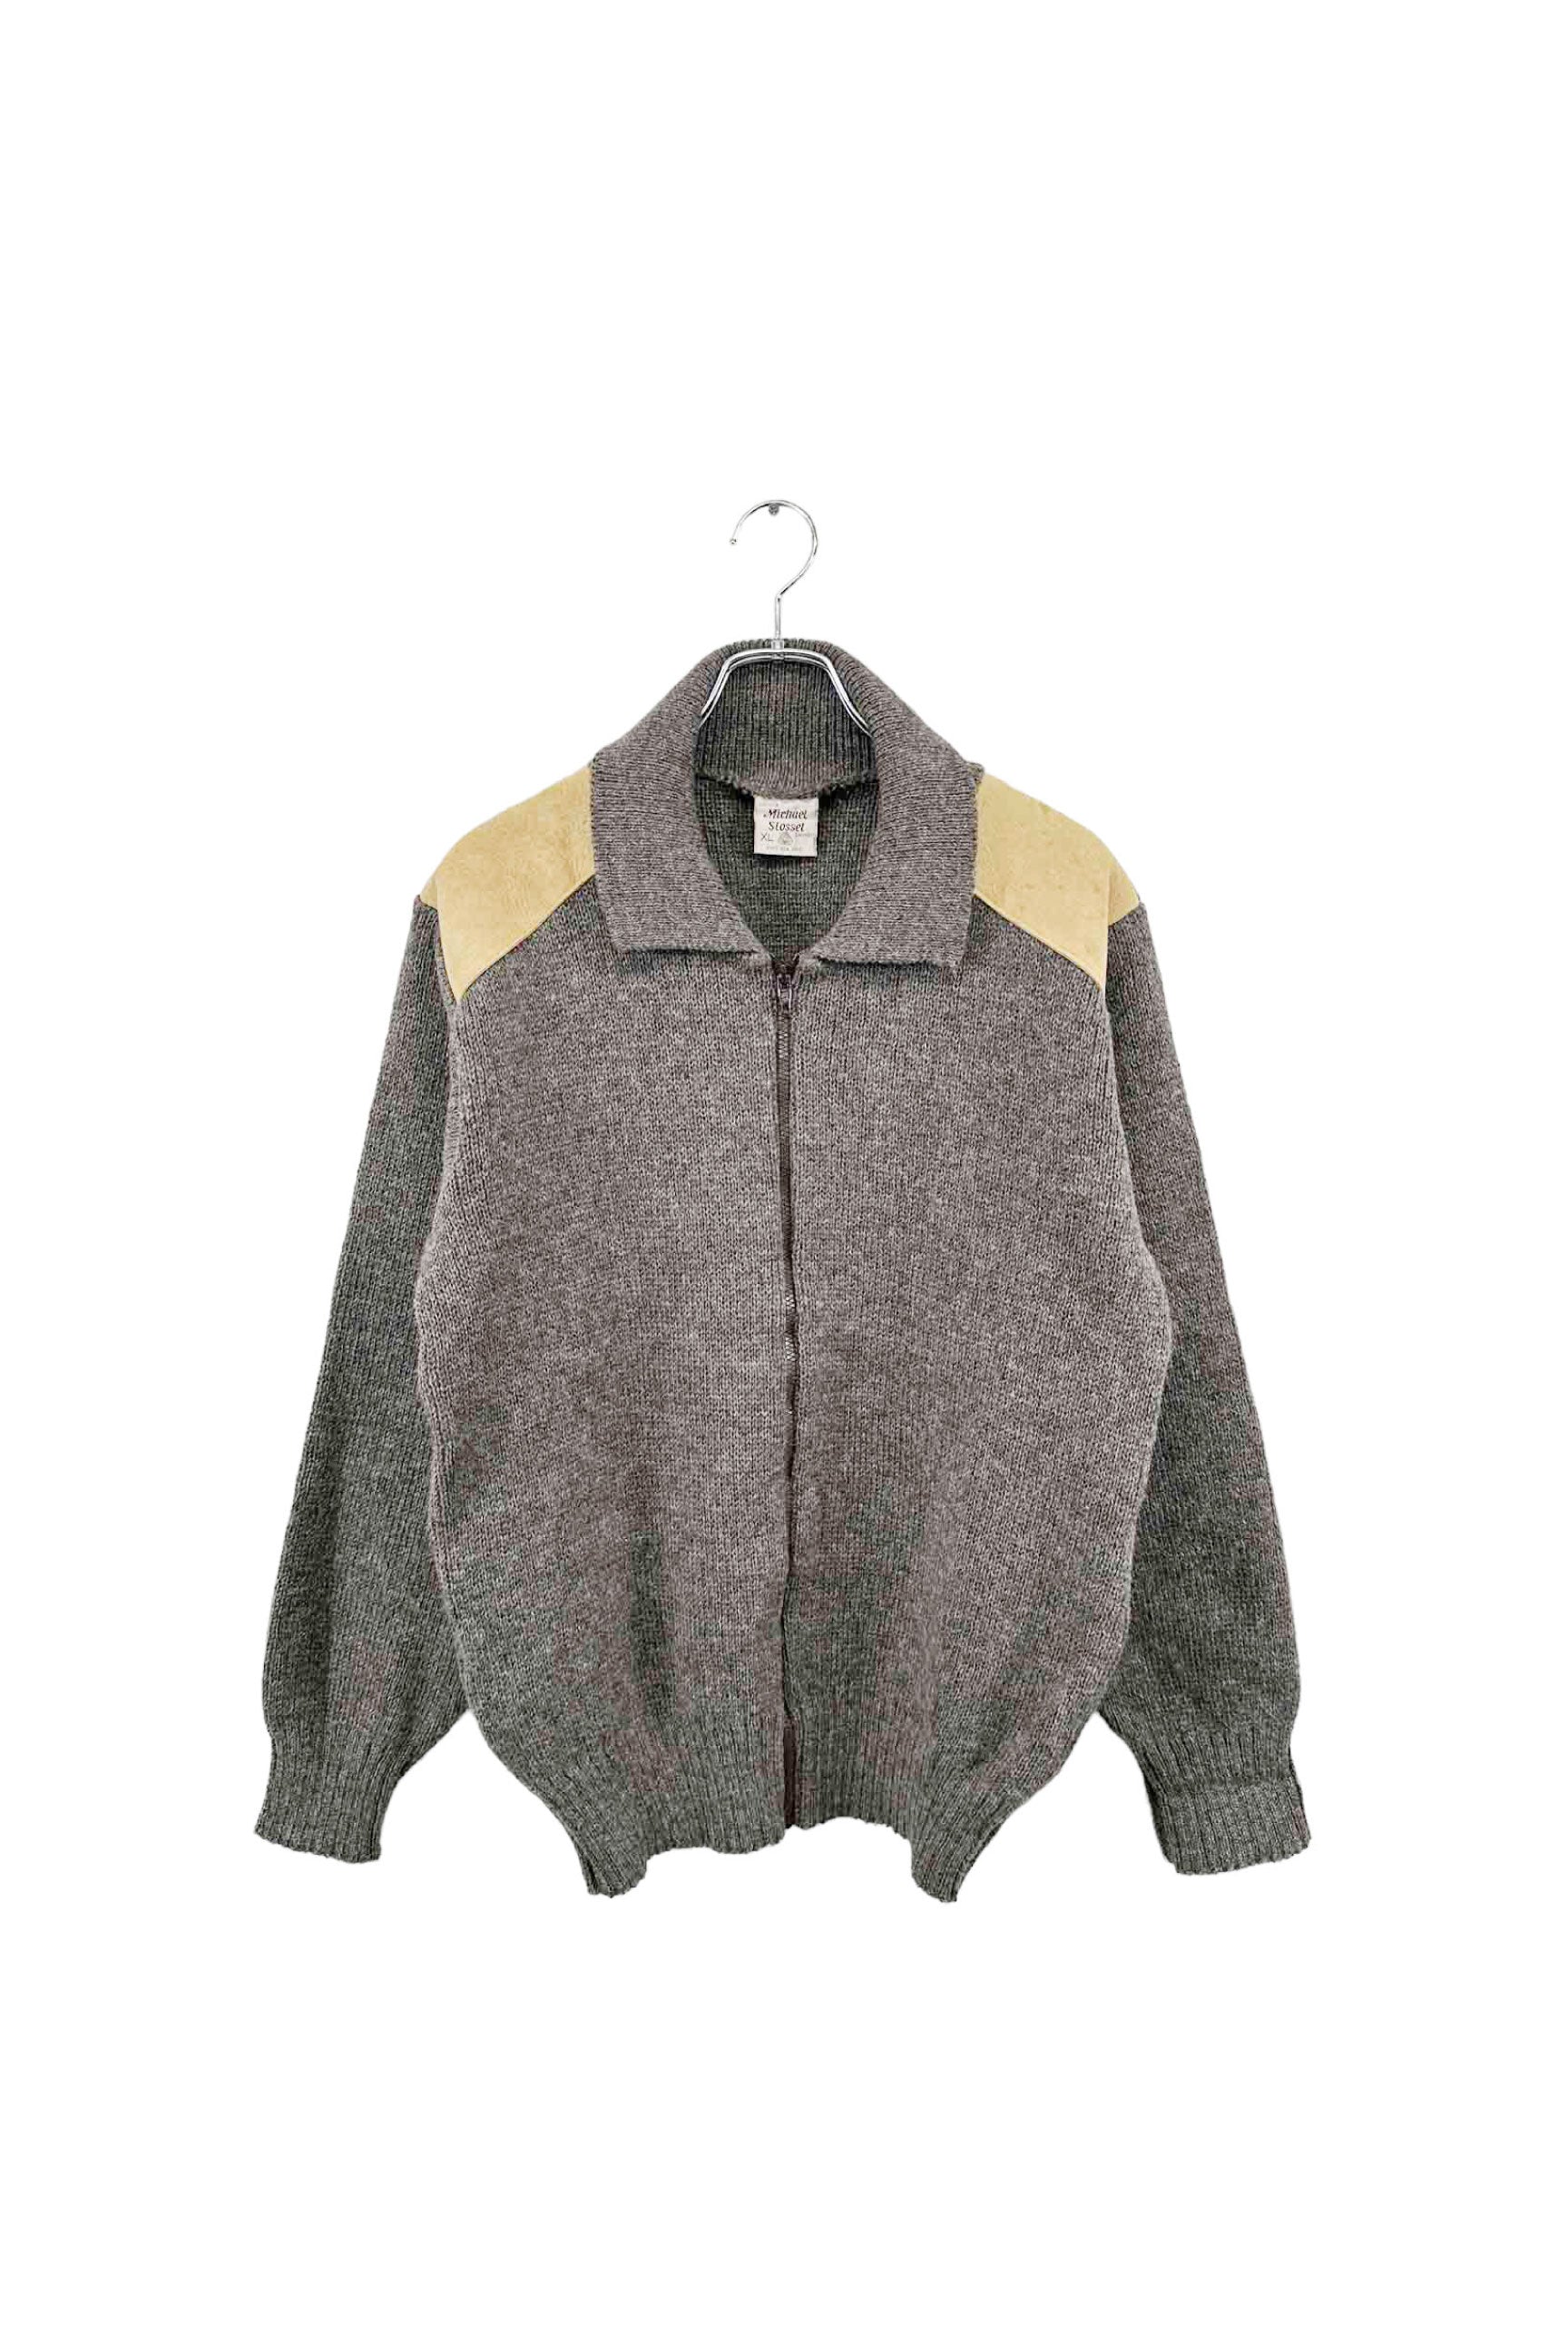 Made in NEW ZEALAND Michael Stossel zip up sweater ジップアップセーター サイズXL ブラウン系 グレー系 メンズ ヴィンテージ 6